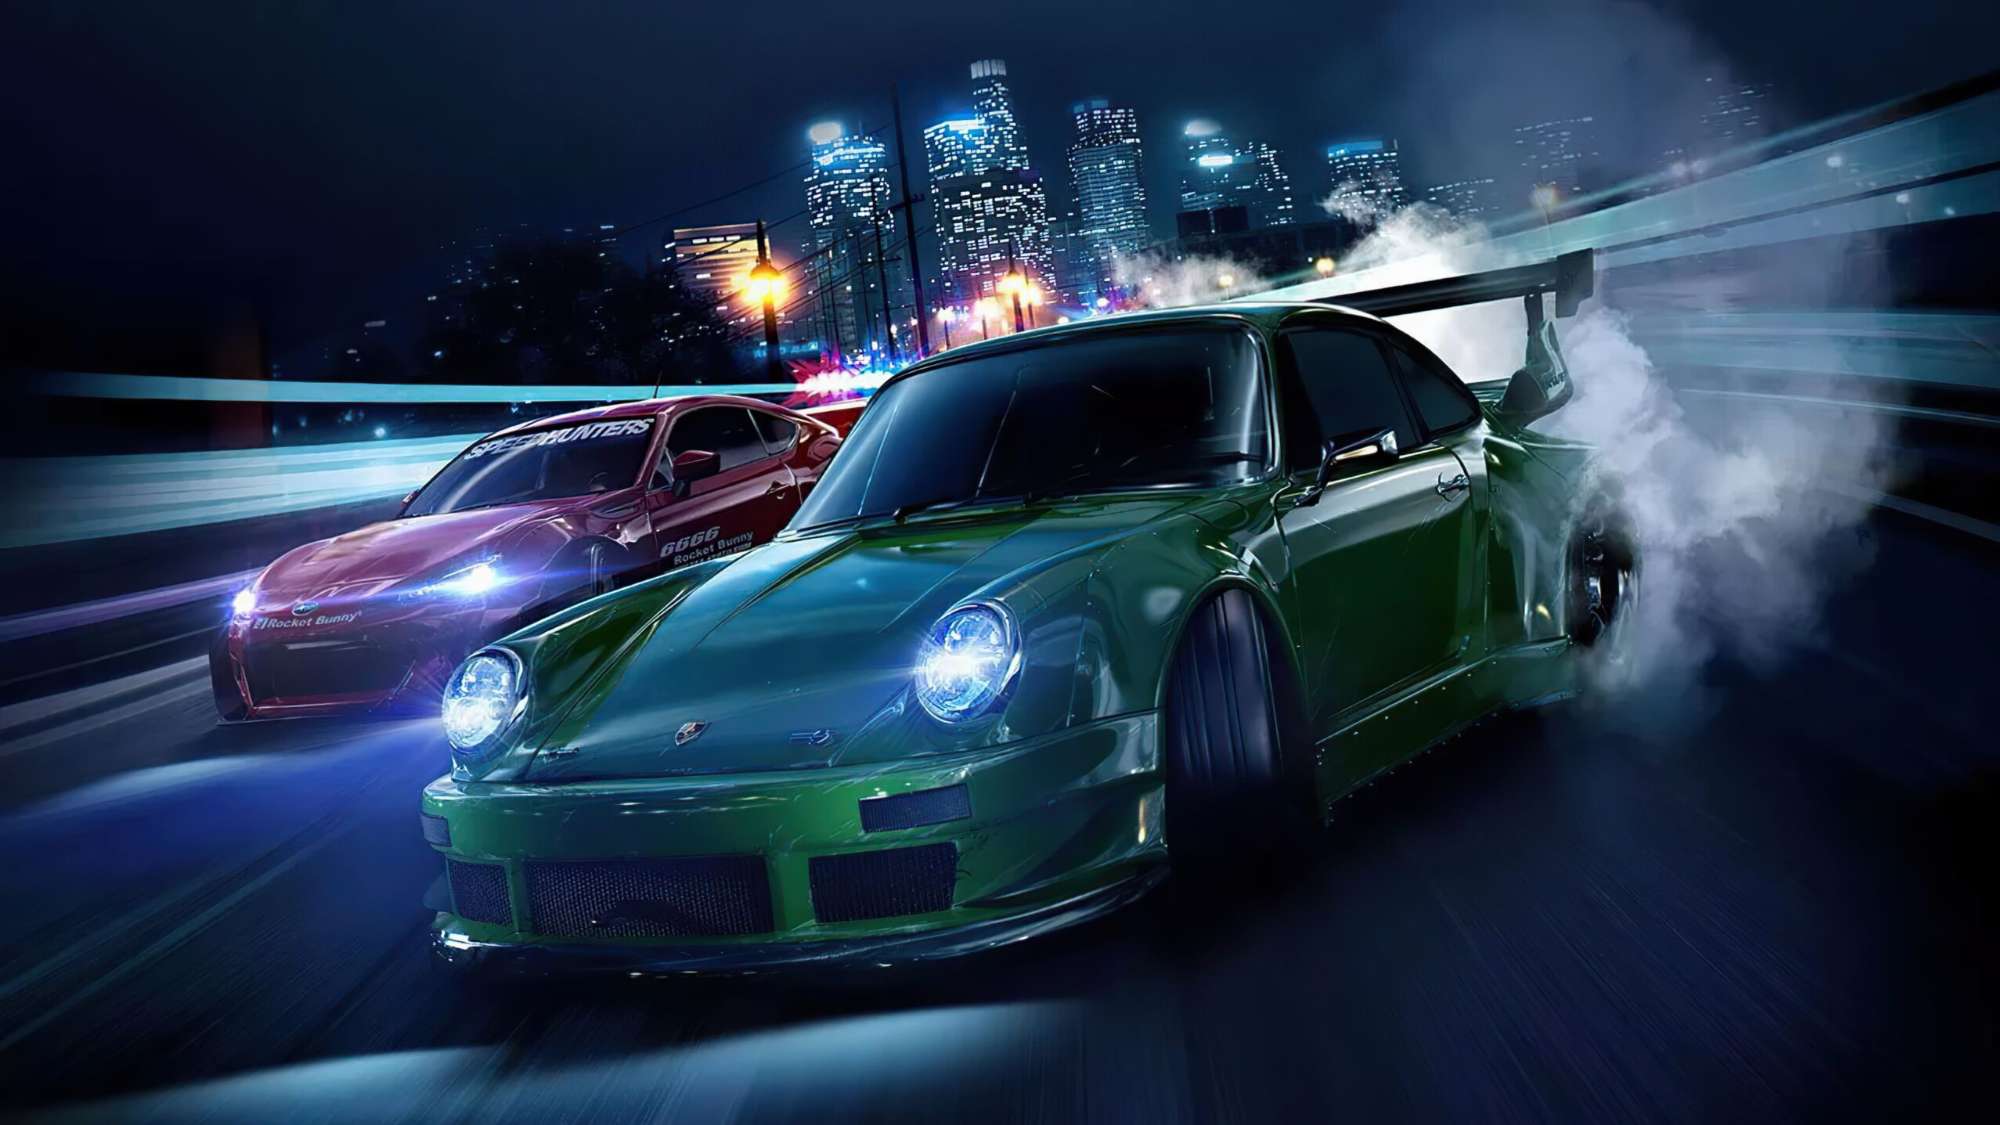 Thương hiệu game nổi tiếng Need For Speed sắp có phần mới, ra mắt vào cuối năm - Ảnh 1.